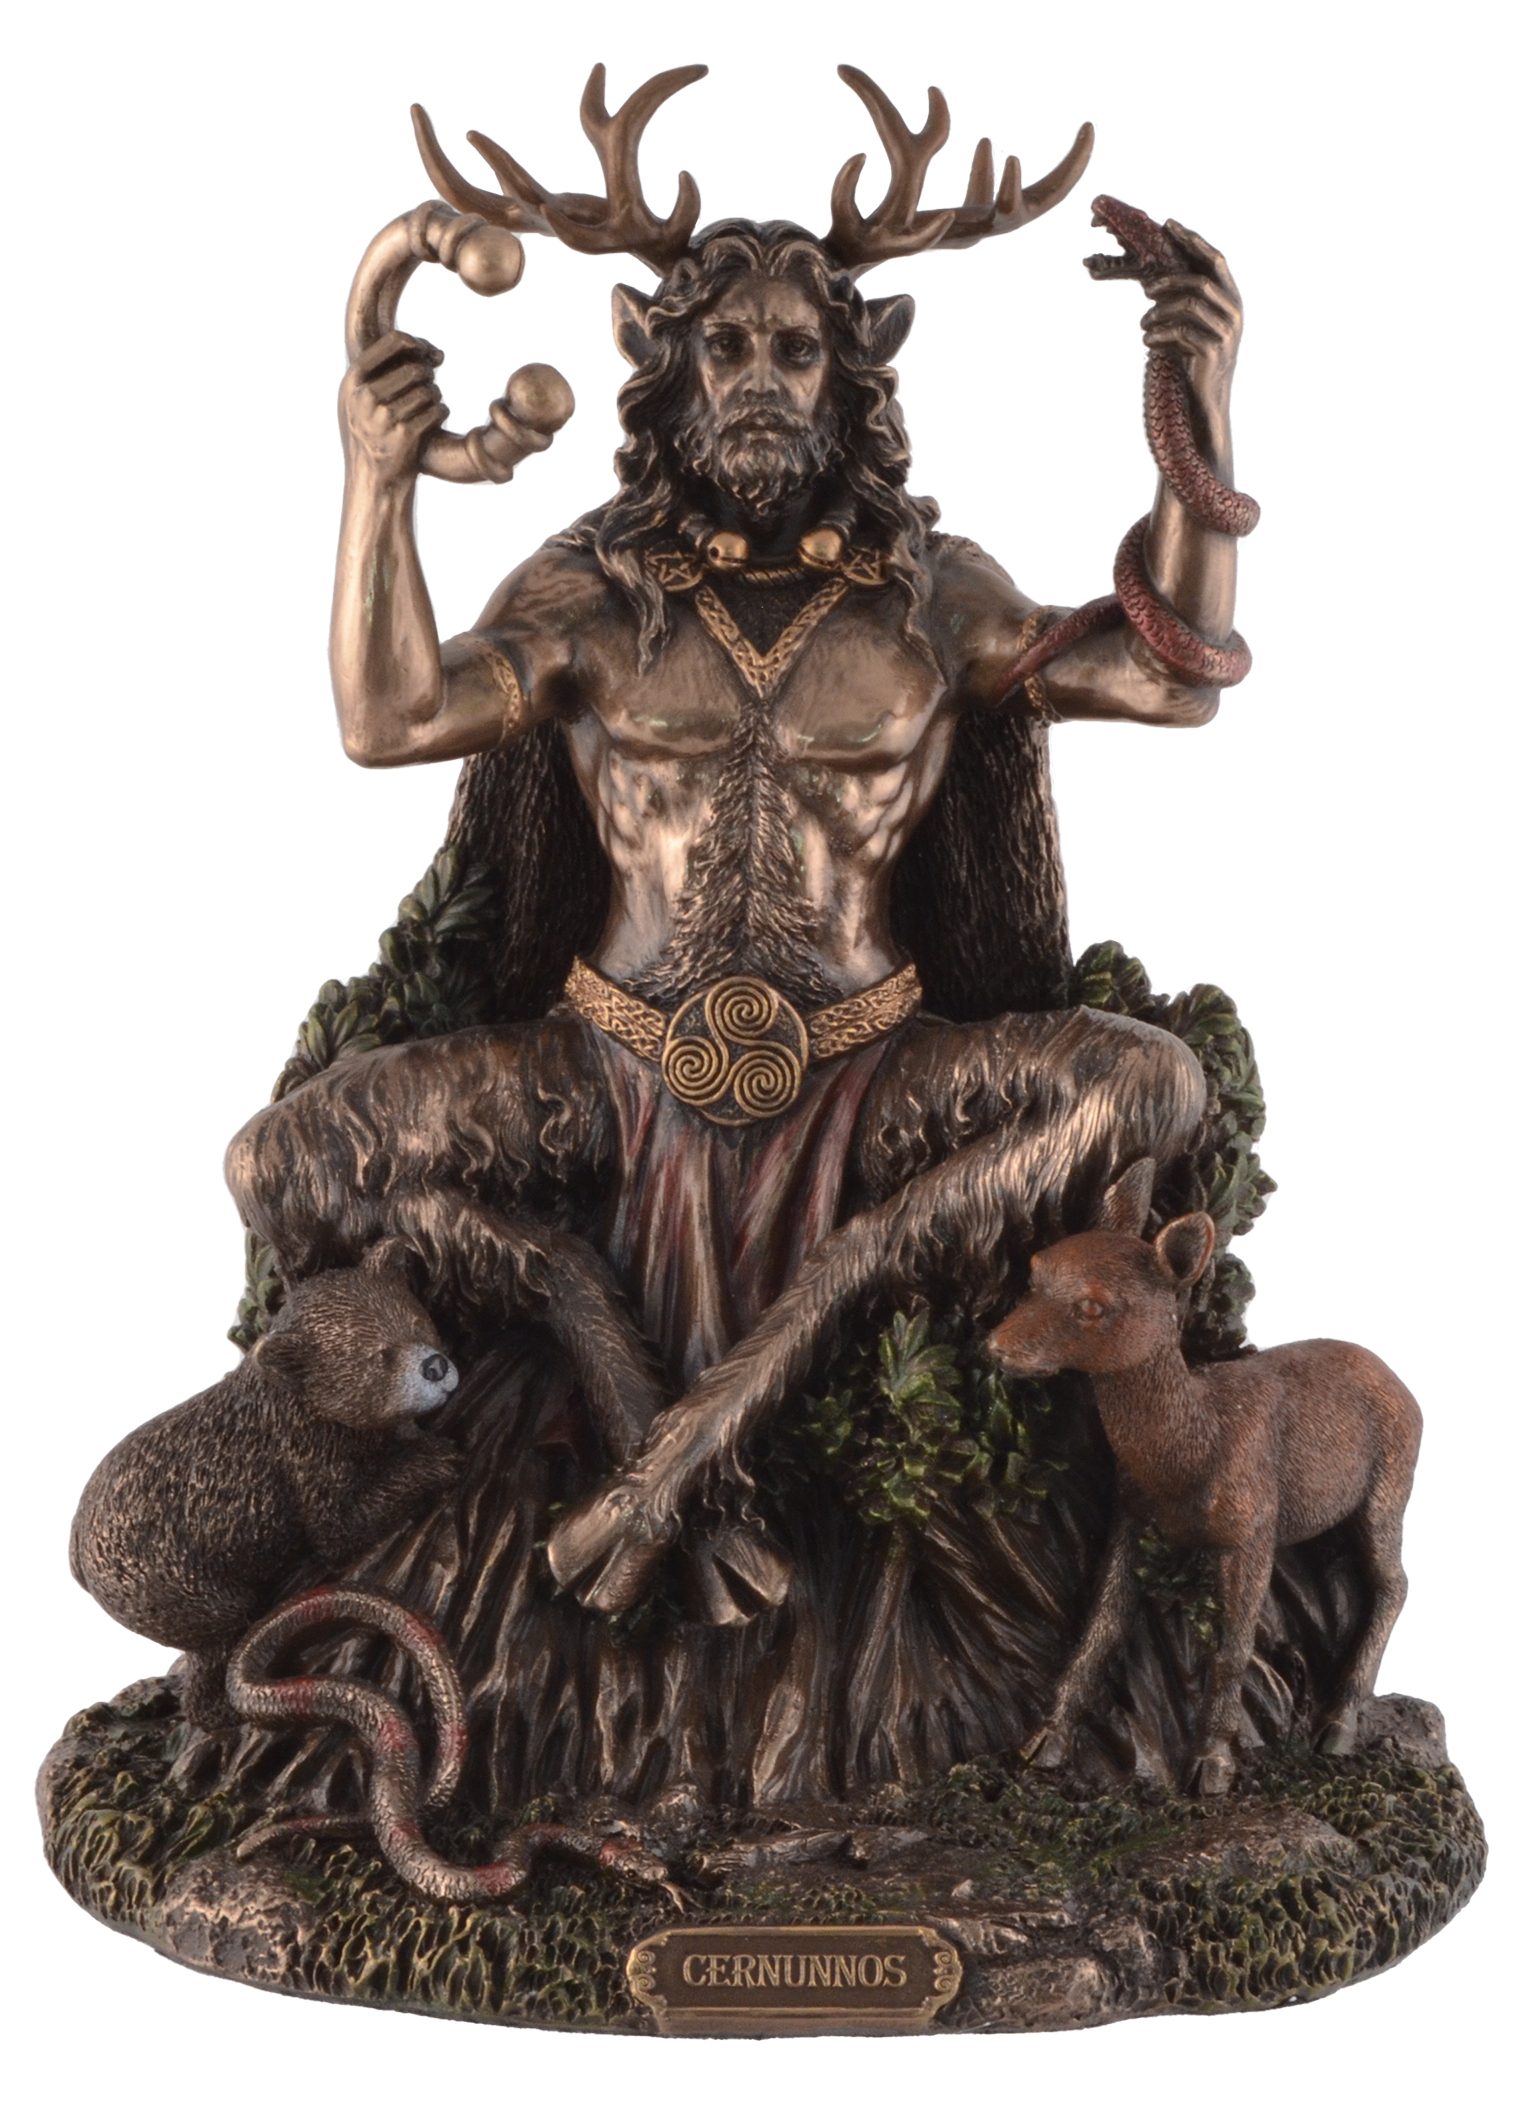 Vogler direct Gmbh Dekofigur Cernunnos kelt. Gott der Natur bronziert by Veronese, von Hand bronziert, LxBxH ca. 19x15x23cm | Dekofiguren